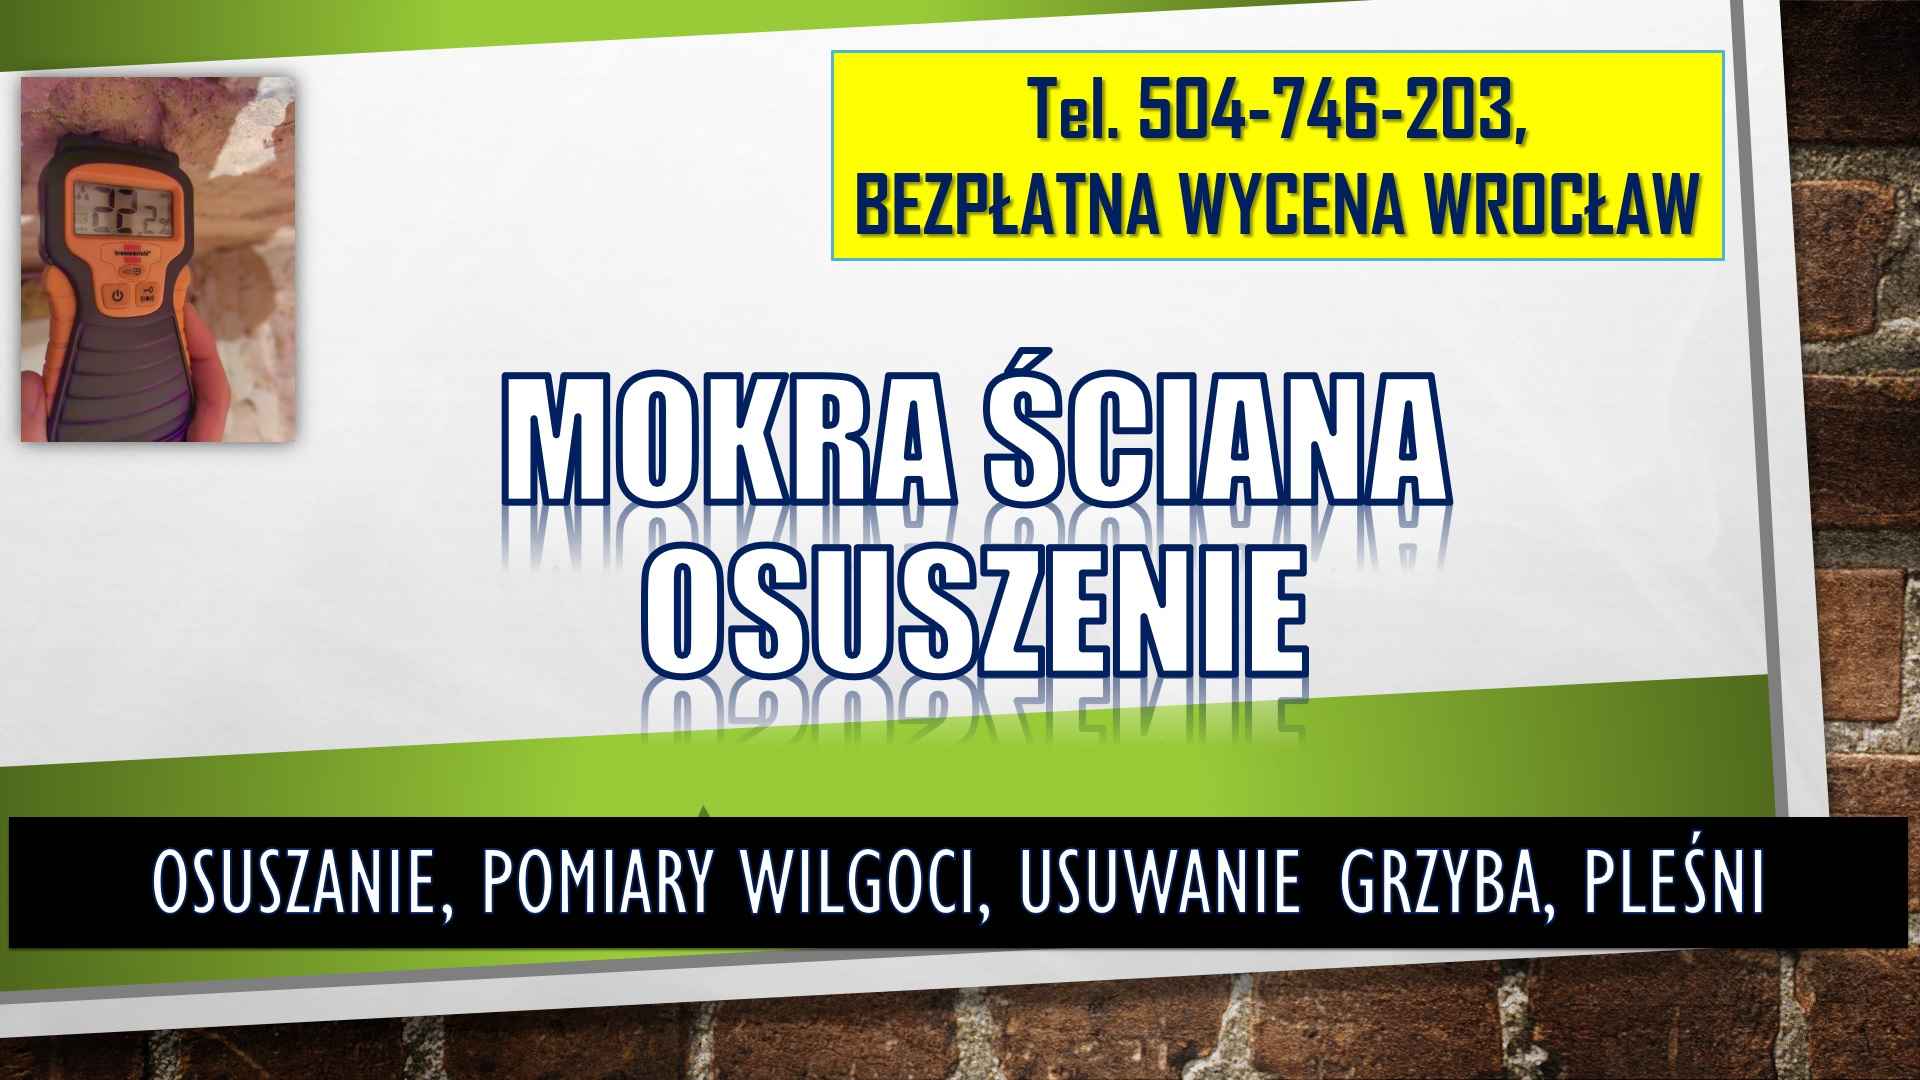 Osuszenie mokrej ściany, t 504746203, Wroclaw, cena,  mokra ściana Psie Pole - zdjęcie 2